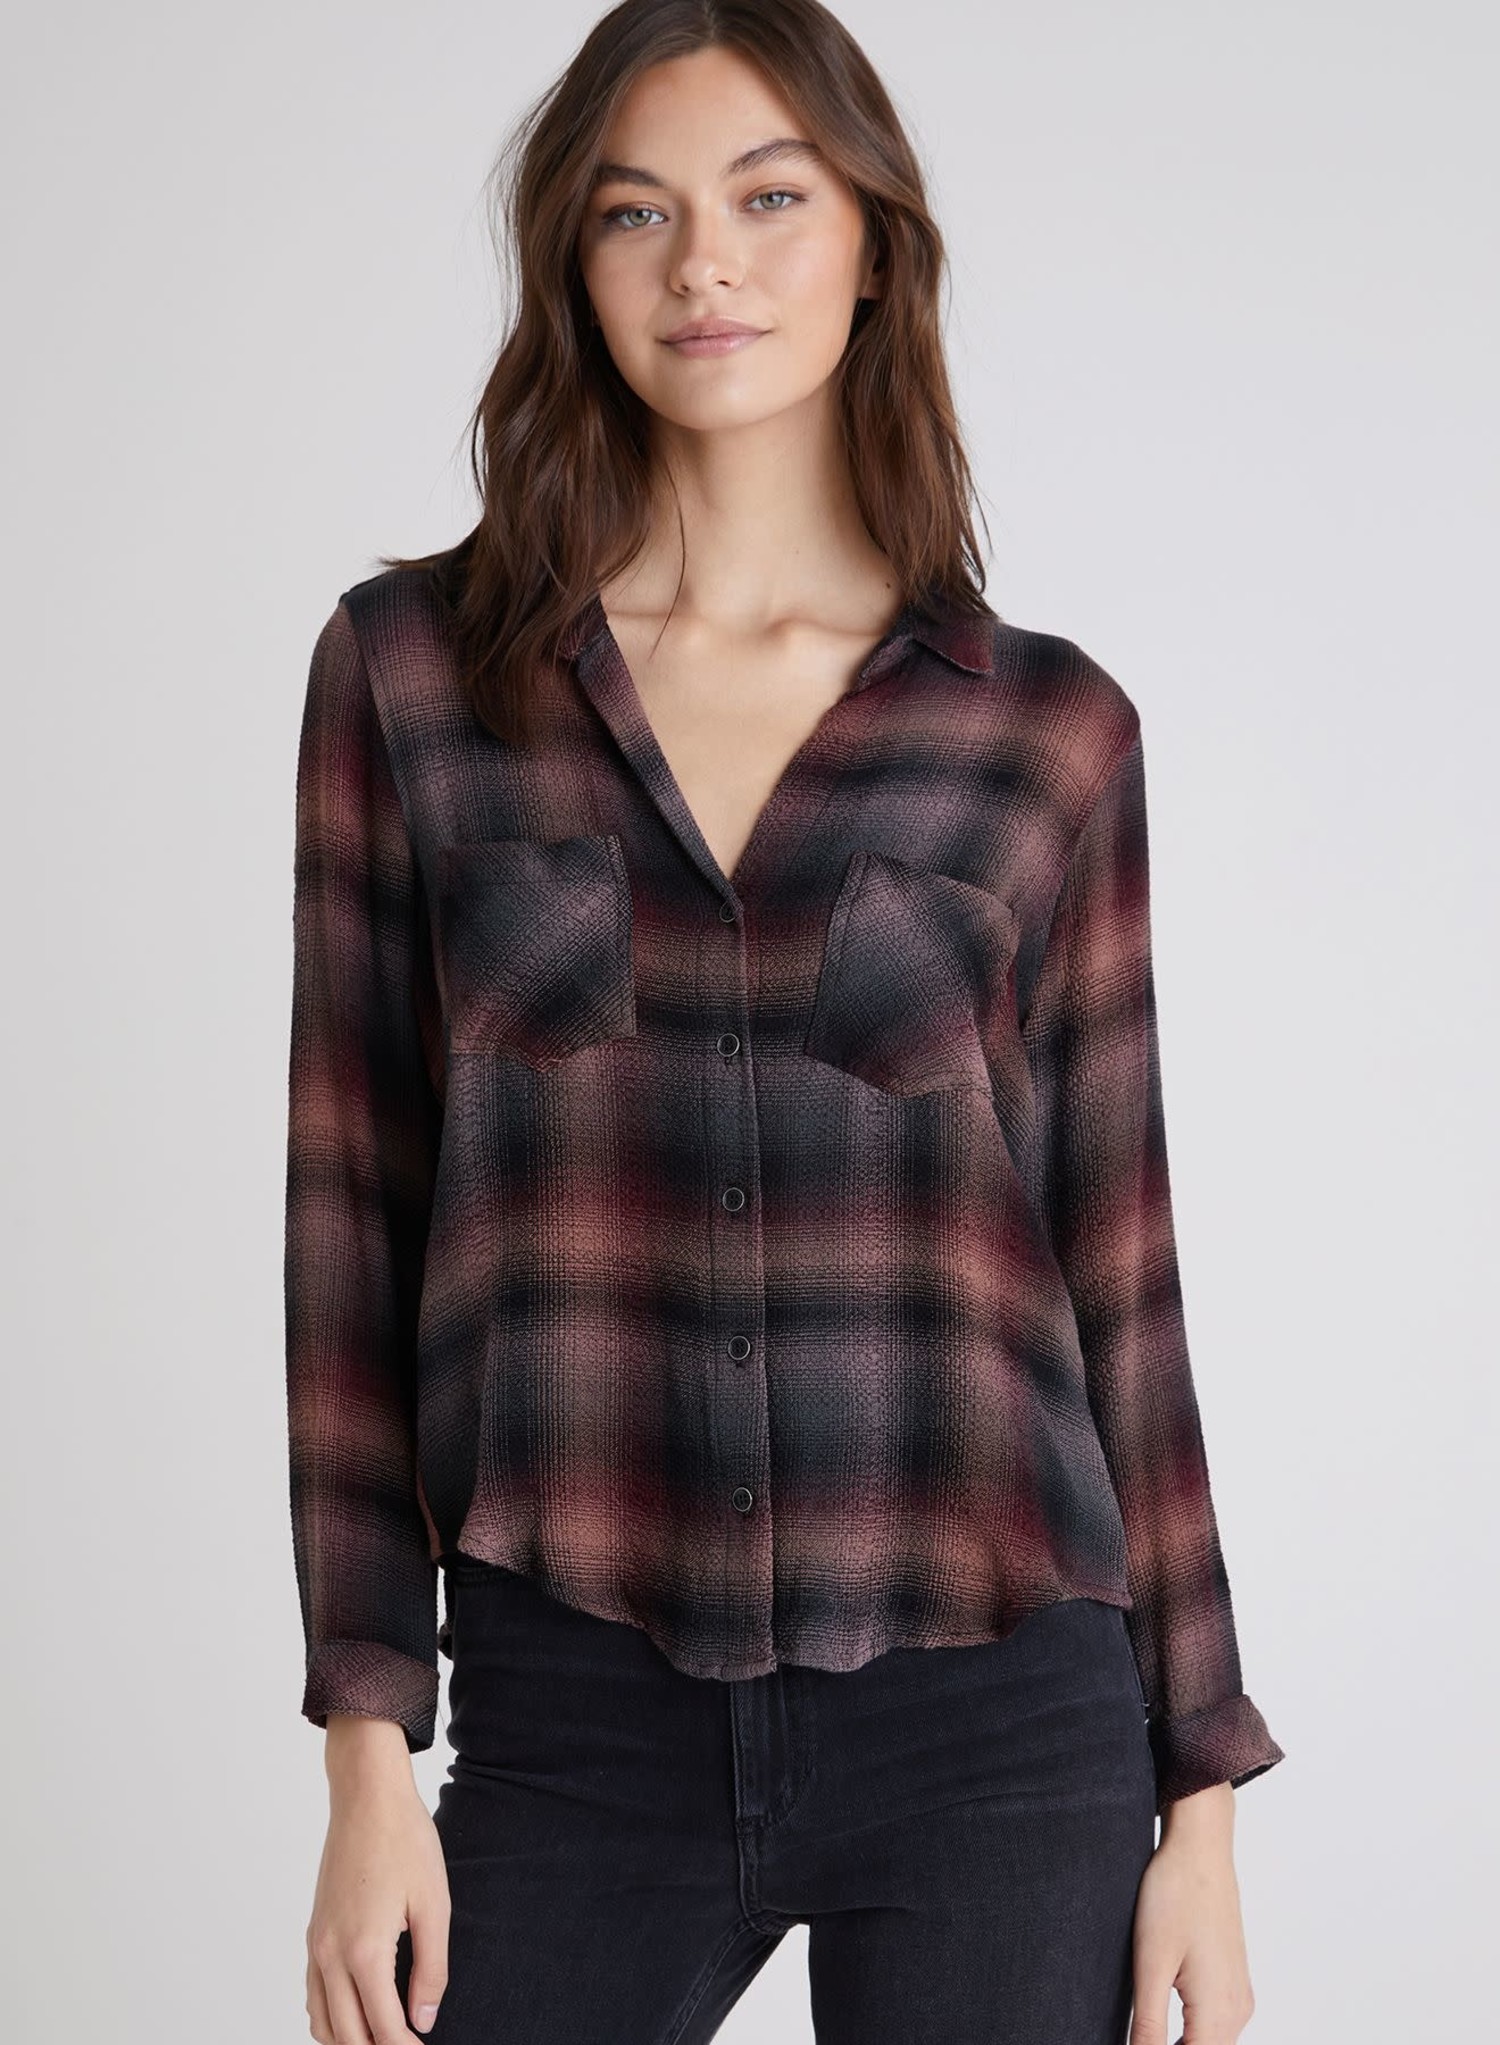  Plaid Flannel Shirt - Ladies' 142041-L